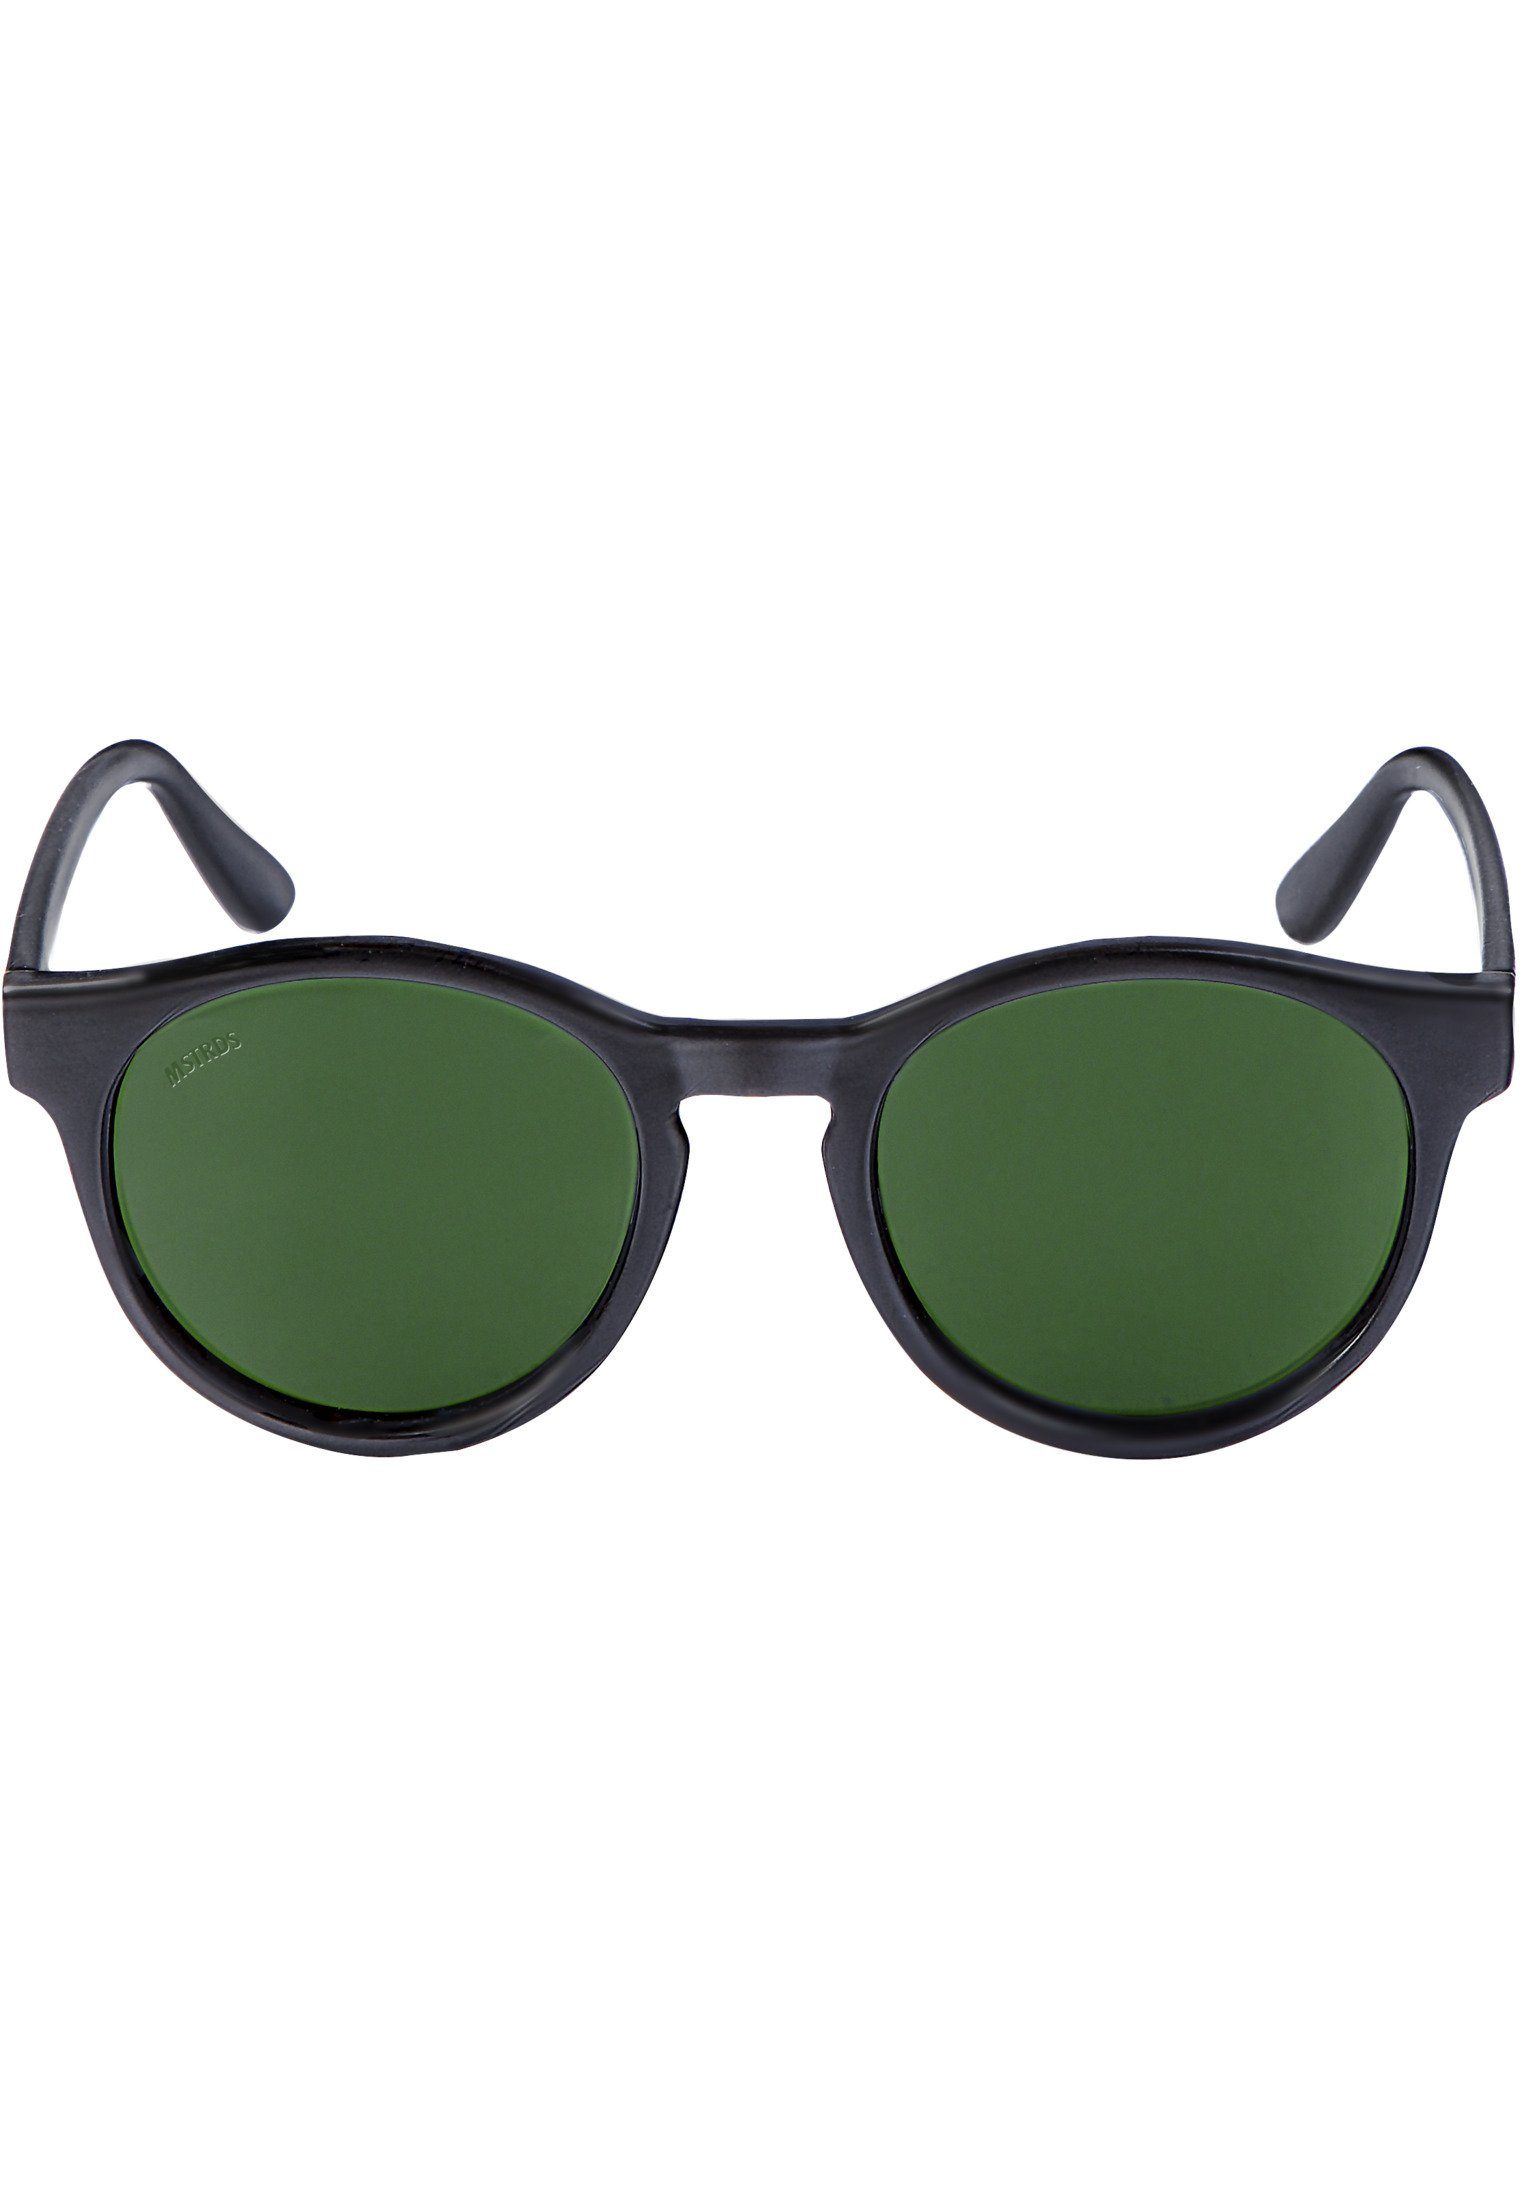 MSTRDS Sonnenbrille Accessoires Sunglasses blk/grn Sunrise